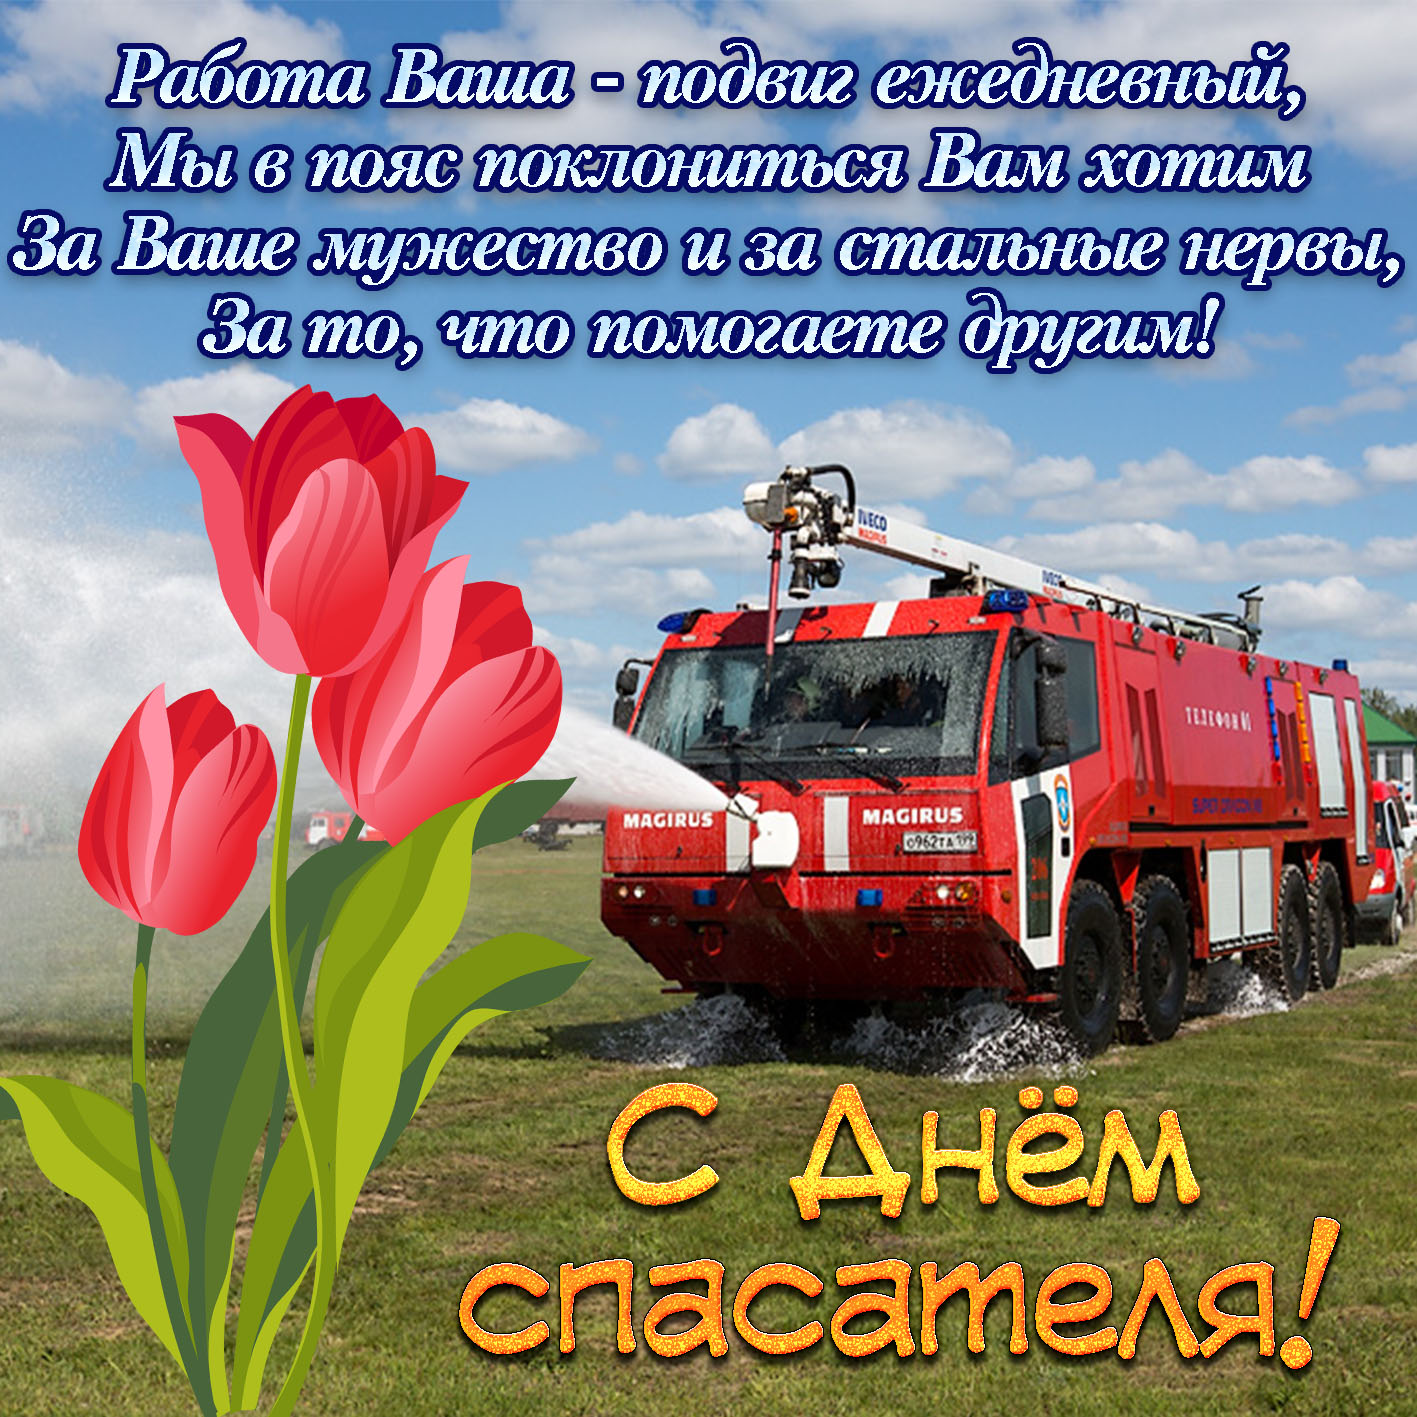 Сценарий день пожарной охраны. С днем спасателя поздравления. Поздравлениесднёмспасателя. Поздравления с днём спасателя МЧС. С днём спасателя аоздравления.